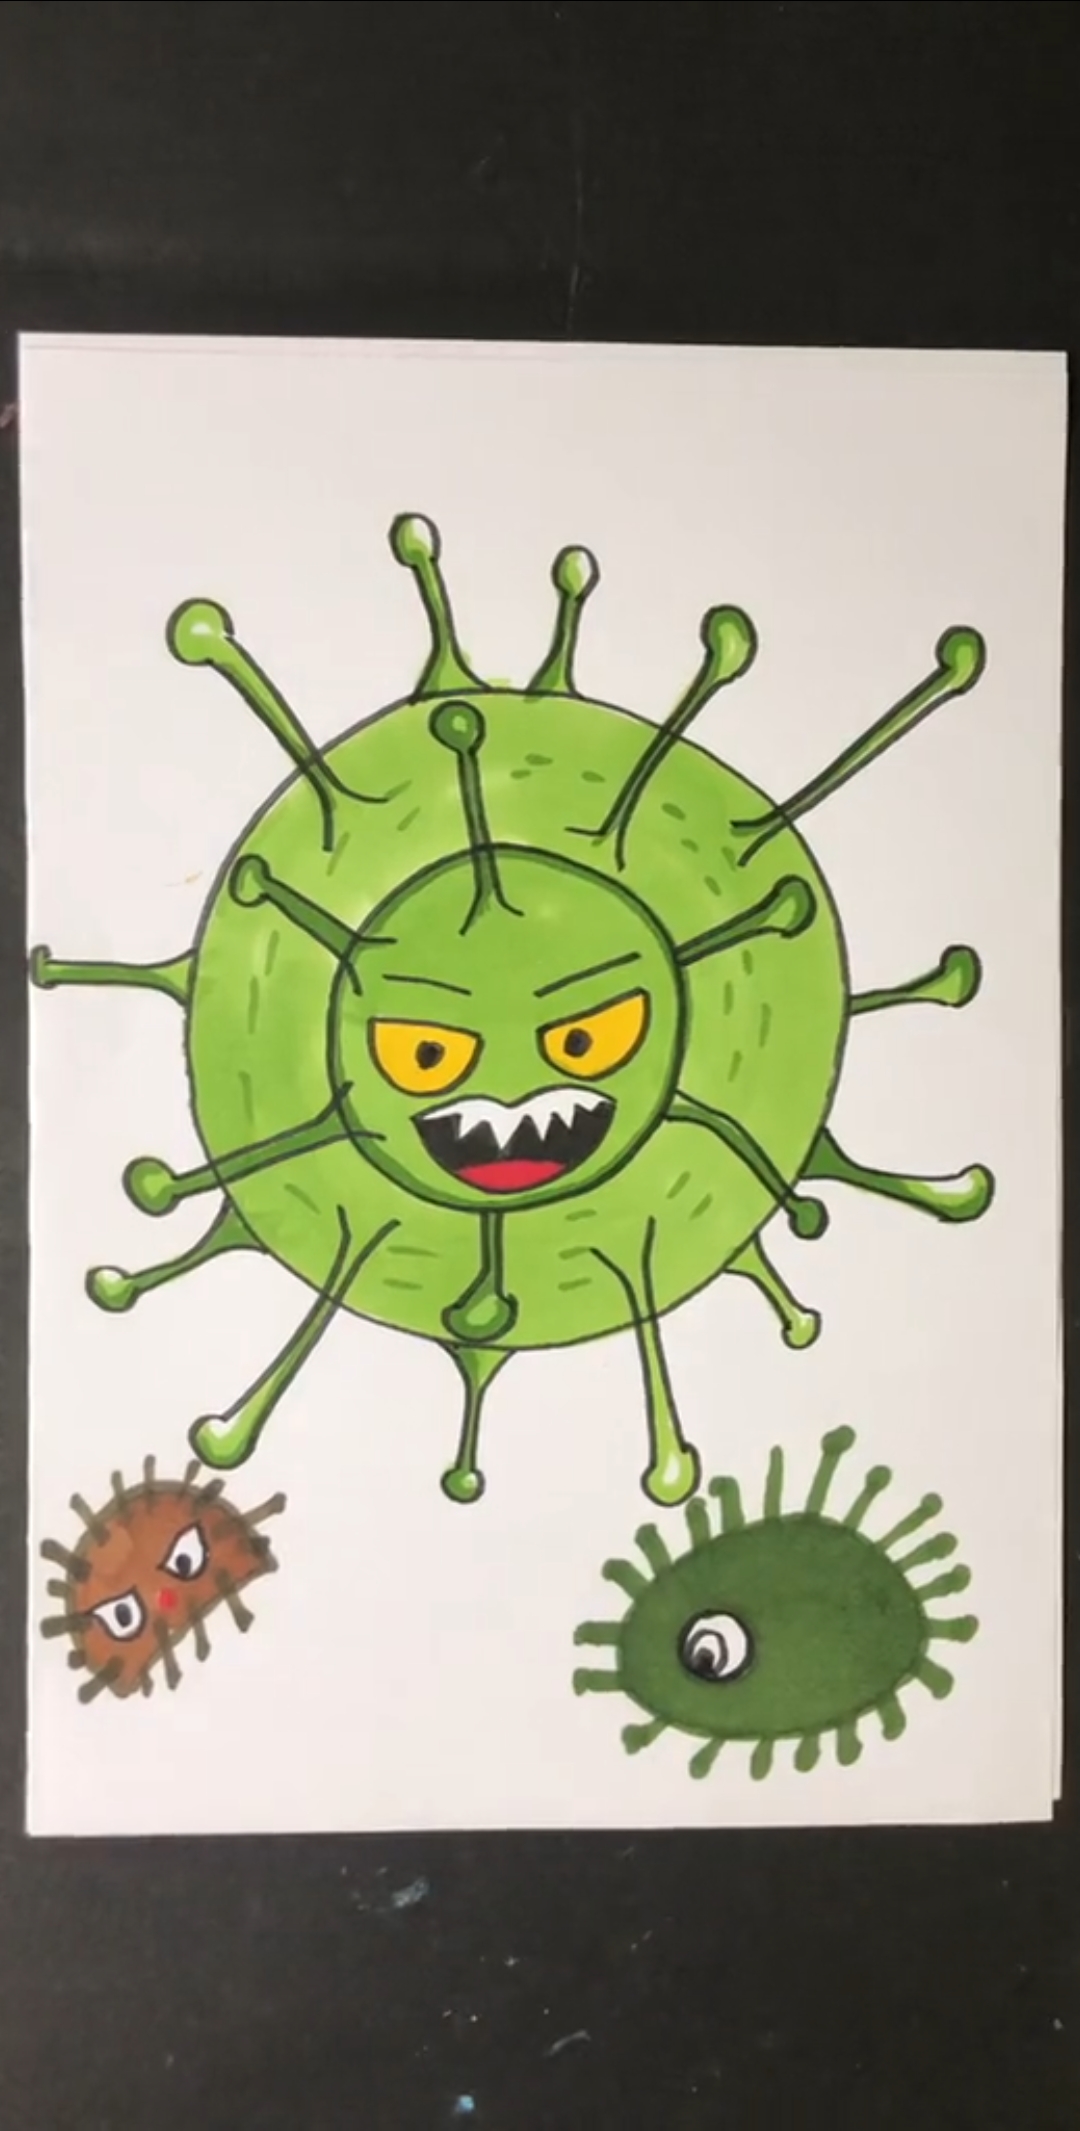 抗病毒的画简单图片